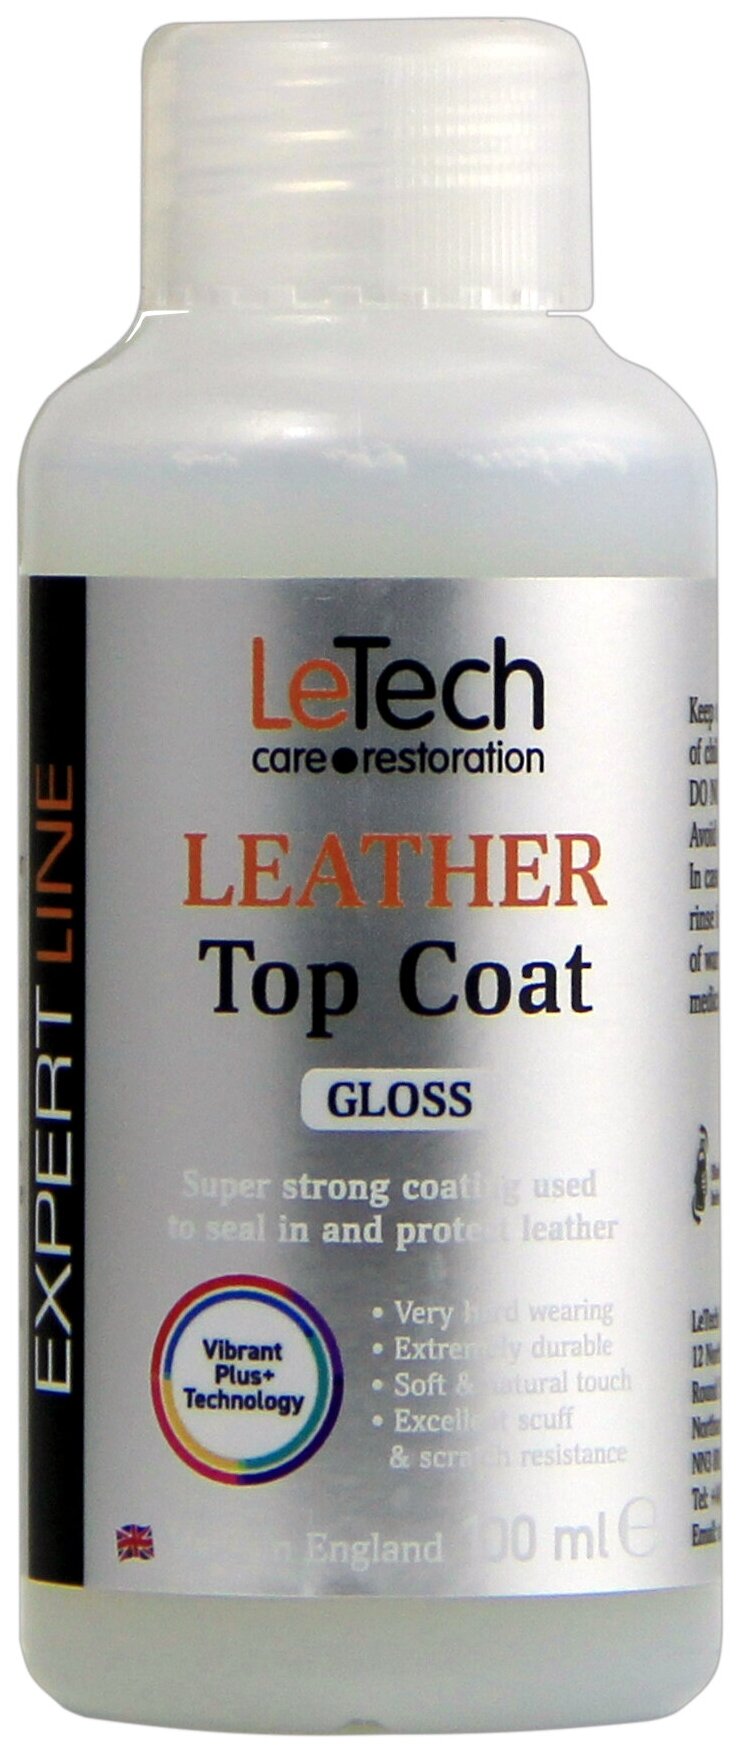 Защитный глянцевый лак для кожи после ремонта после покраски LeTech (Leather Top Coat) Gloss 100ml